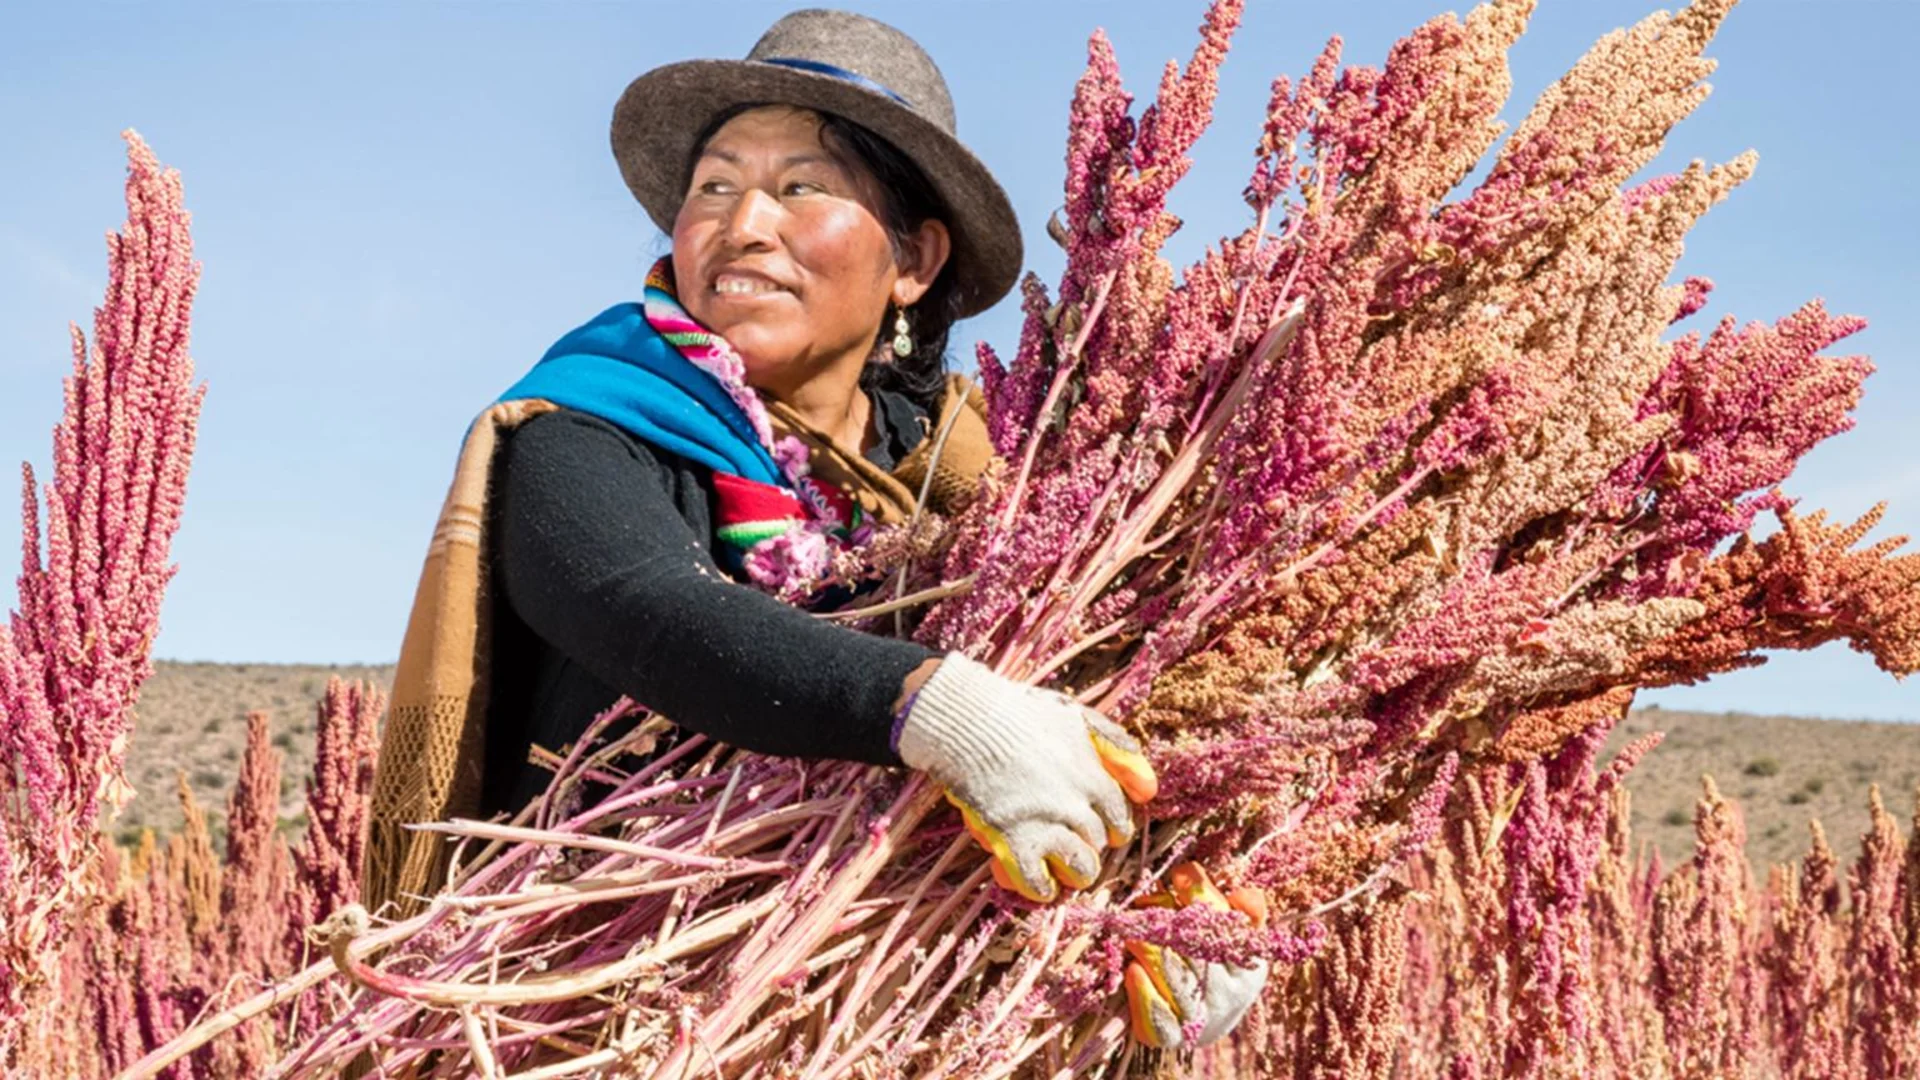 Eine südamerikanische Frau bei der Quinoa-Ernte